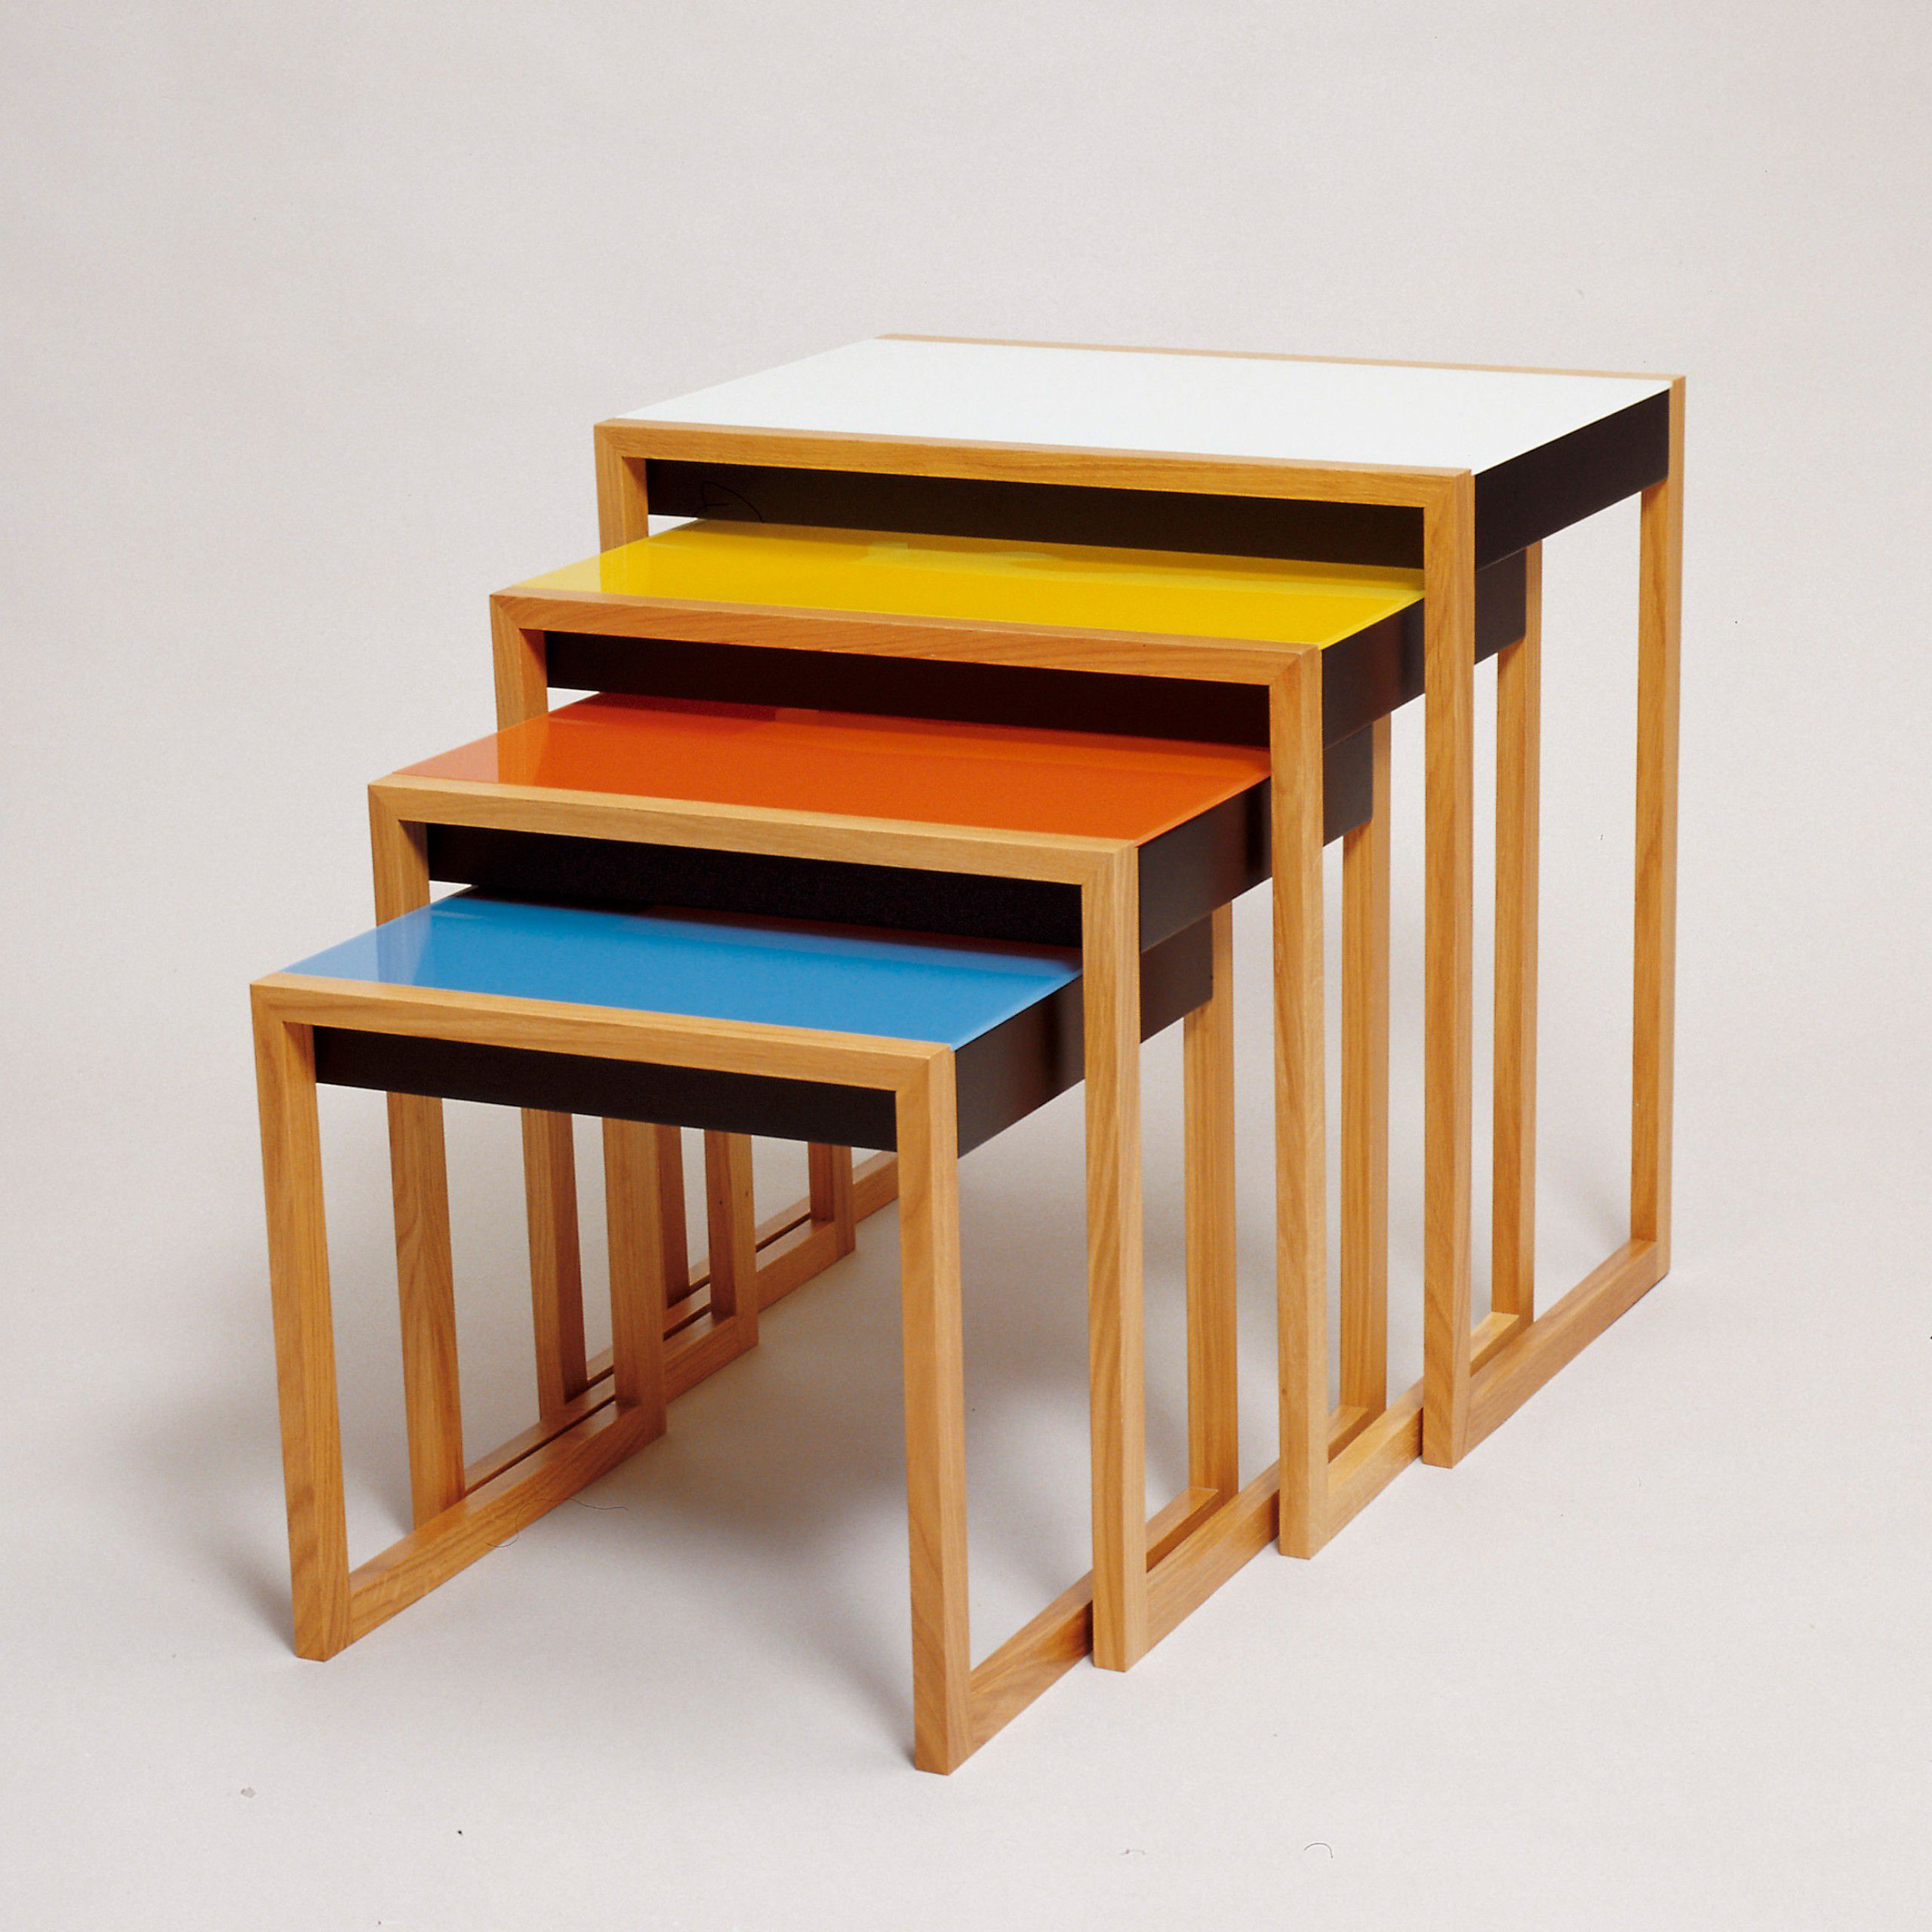 Yerleştirilebilir Masalar (Nesting Tables): Josef Albers